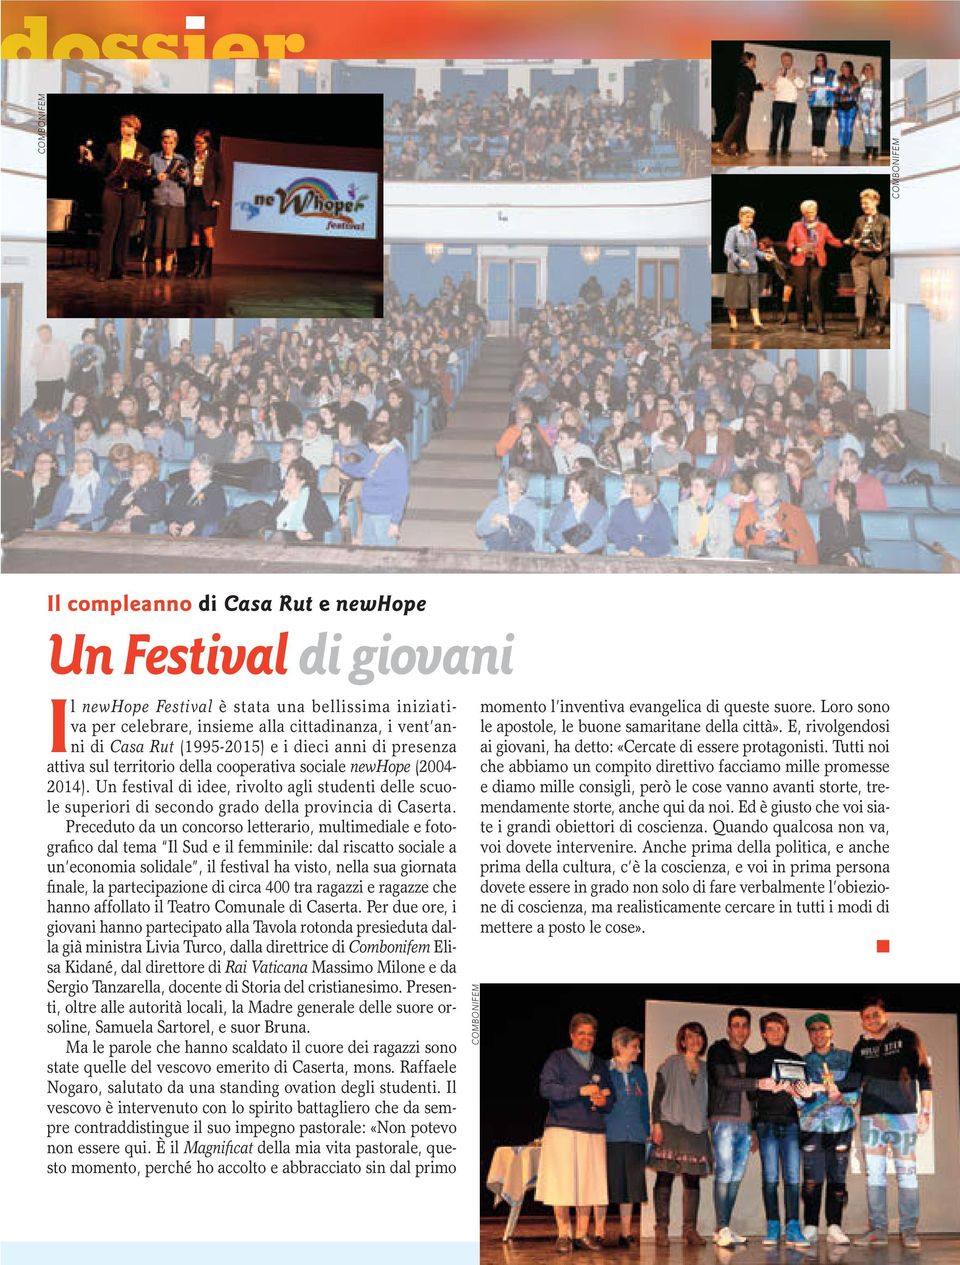 Un festival di idee, rivolto agli studenti delle scuole superiori di secondo grado della provincia di Caserta.